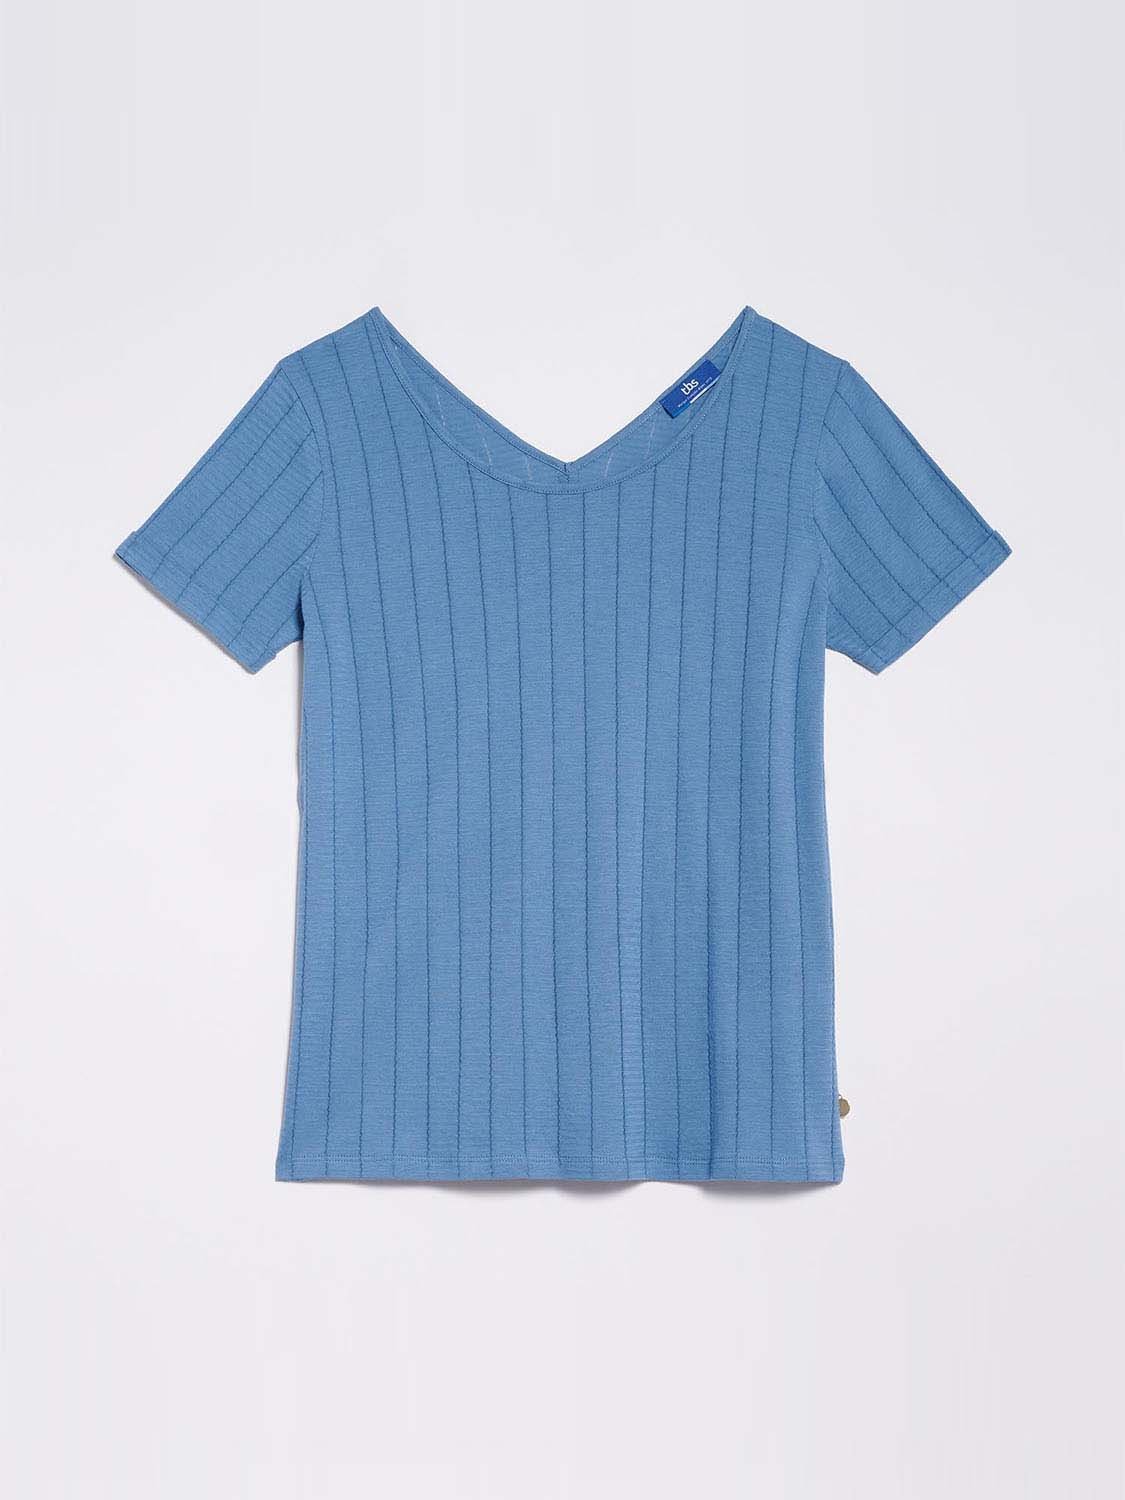 Tee-Shirt Femme Coton Fin Bleu Marine